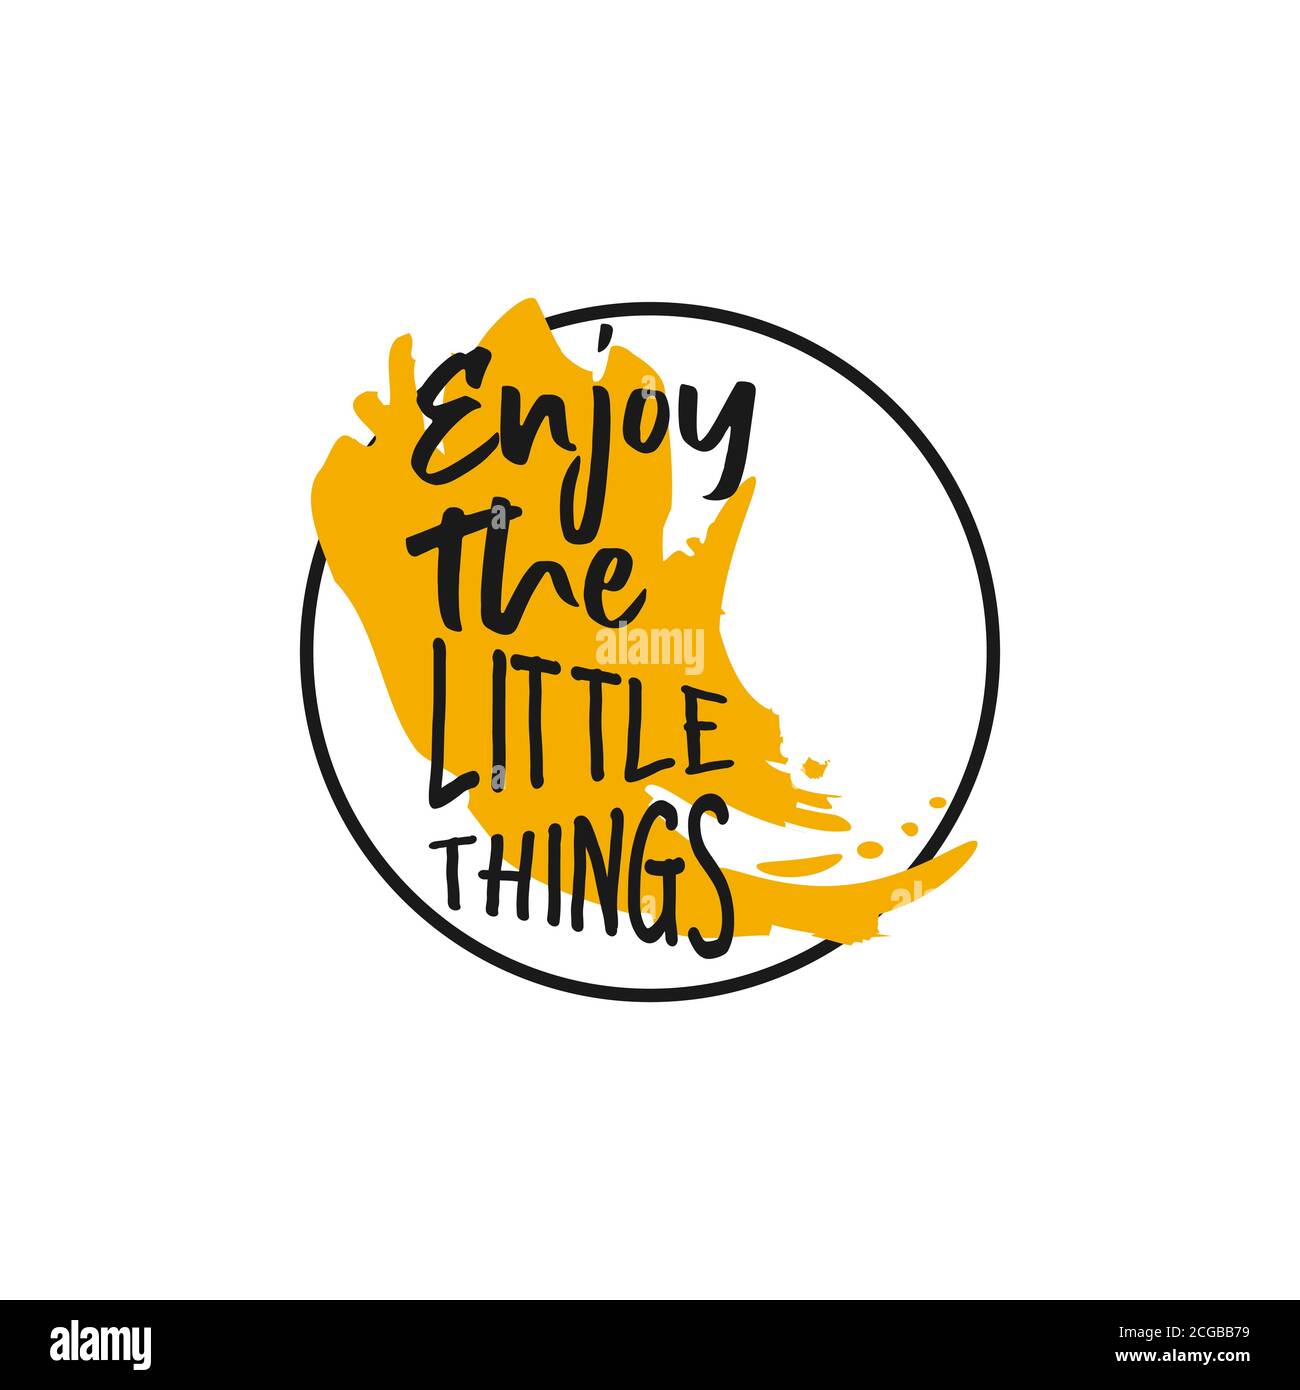 Genießen Sie die Little Things Hand Lettering Motivations Zitat Banner. Vector typografisches inspirierendes Zitationsposter. Stock Vektor